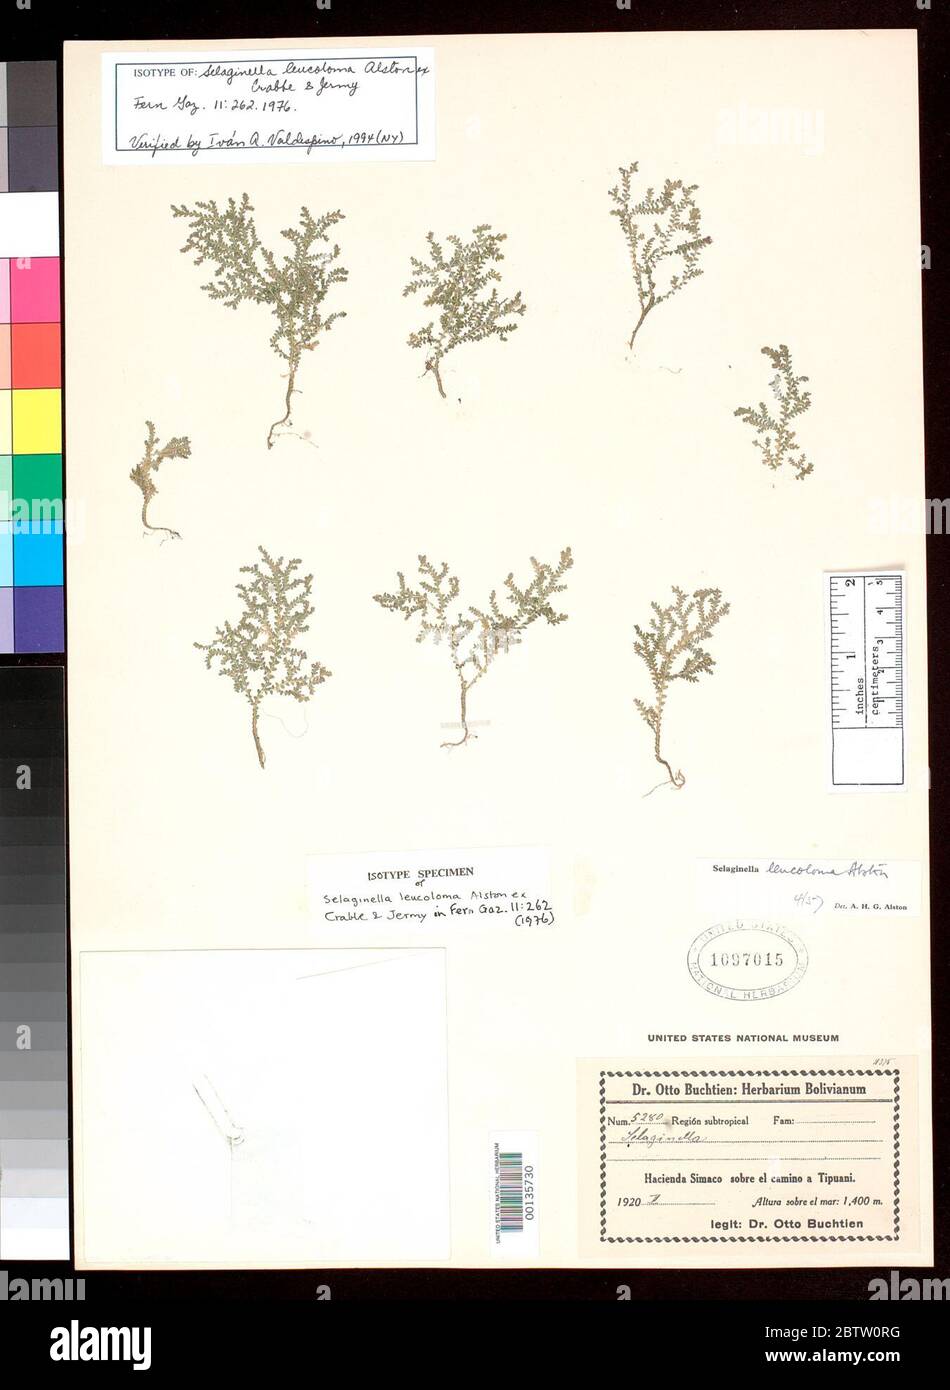 Selaginella leucoloma Alston ex Crabbe Jermy. Stock Photo